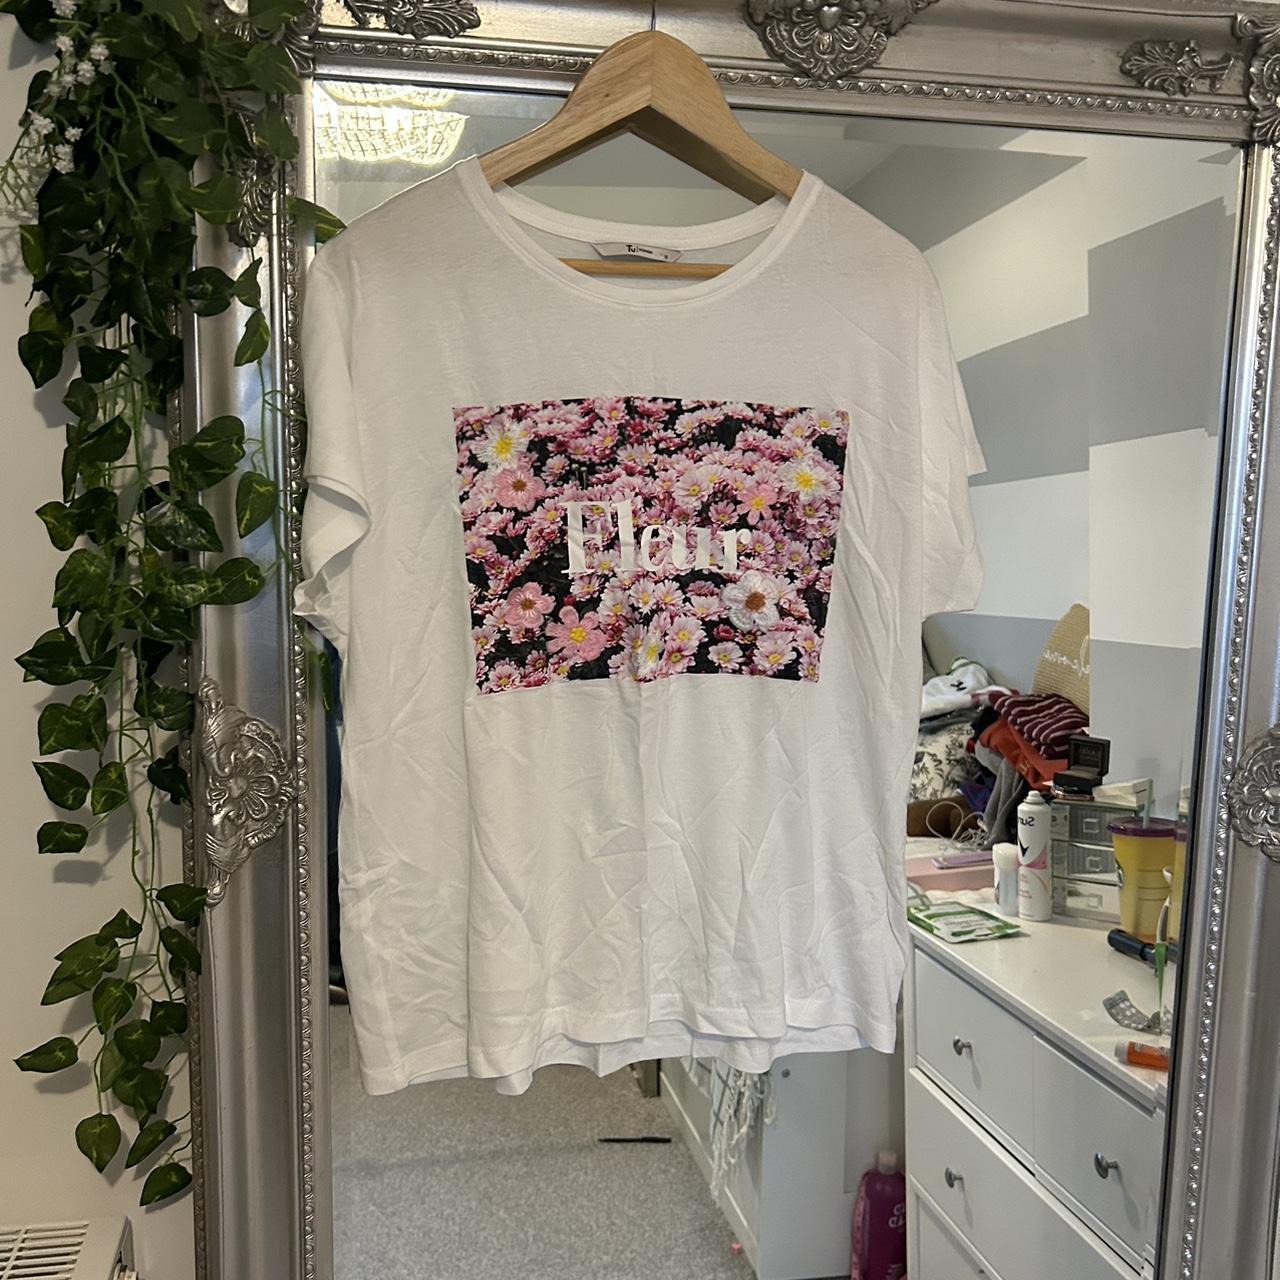 Sainsbury's TU Women's White and Pink T-shirt | Depop